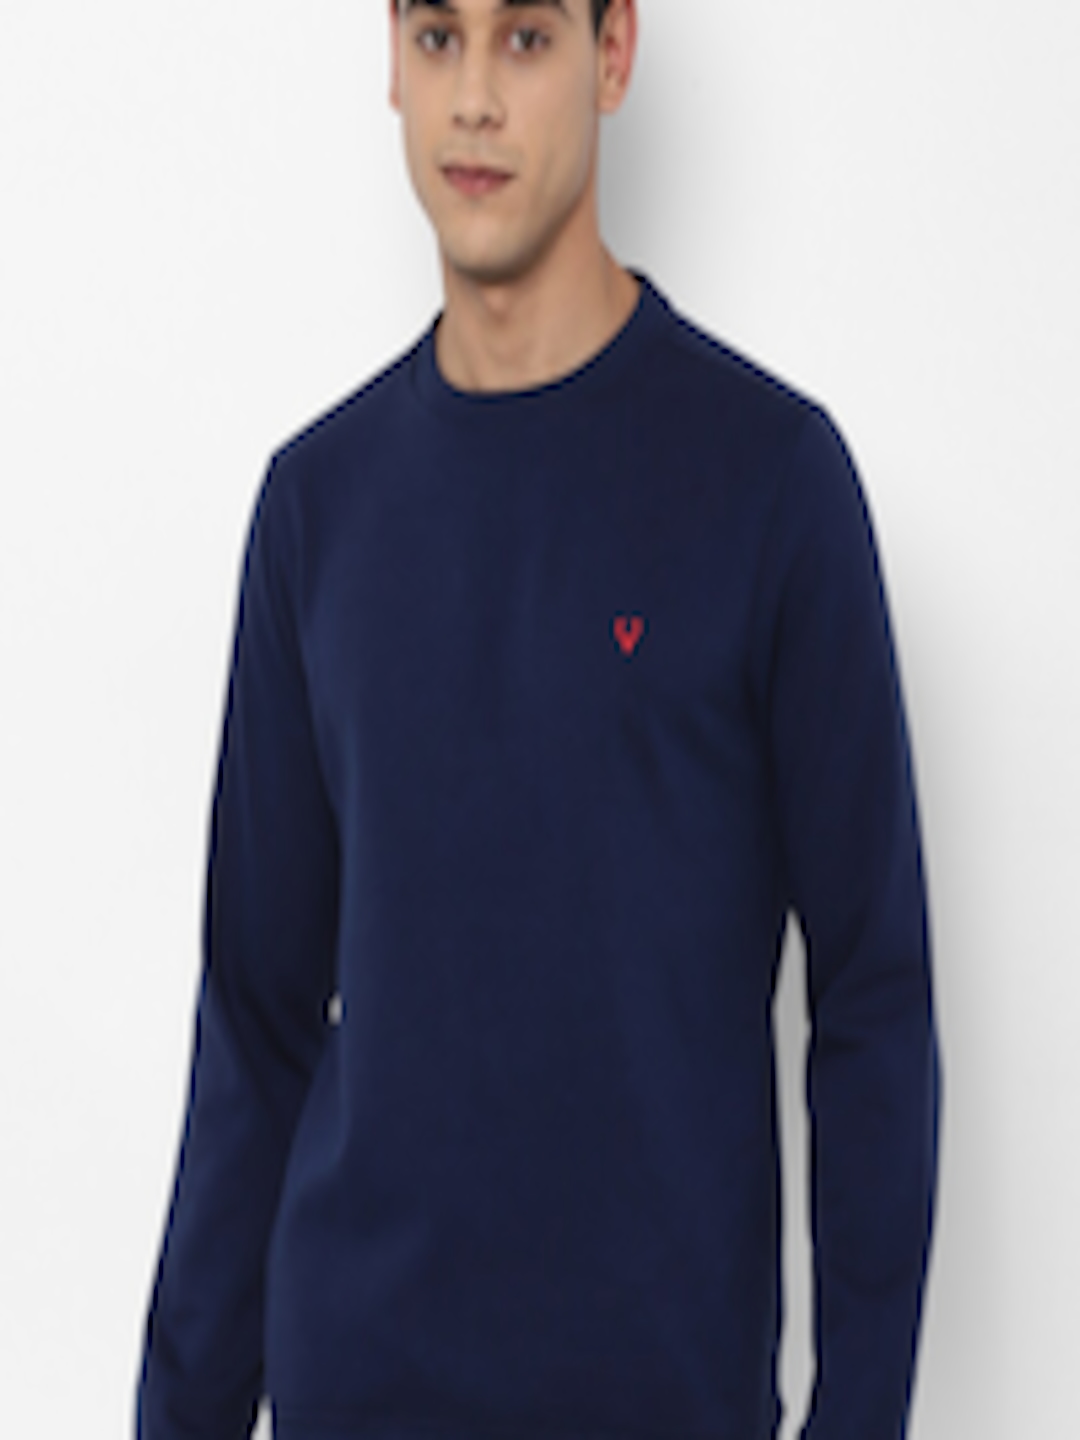 Buy Allen Solly Men Navy Blue Solid Cotton Sweatshirt - Sweatshirts for ...